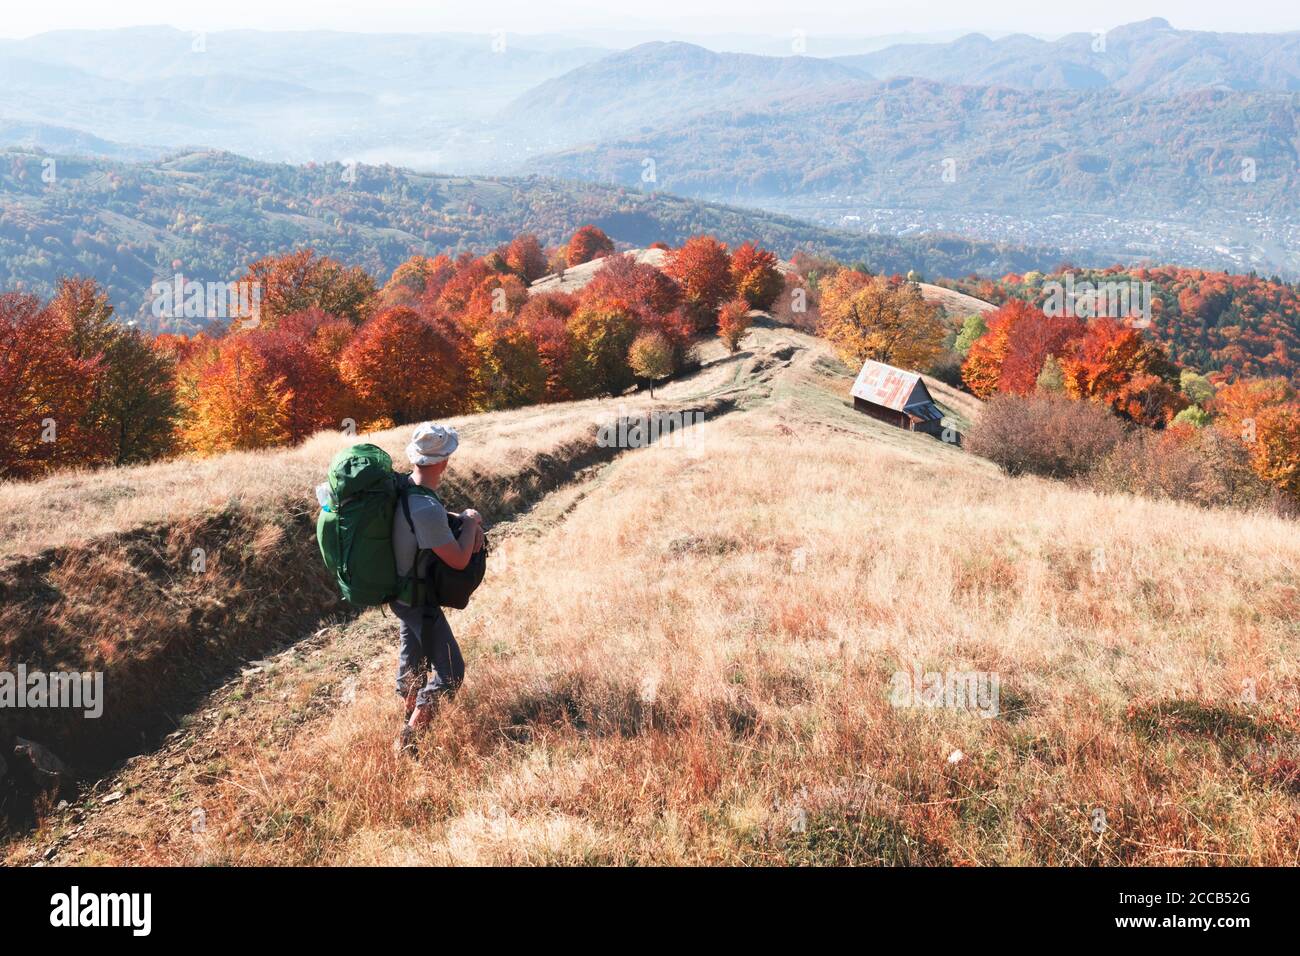 Backpacker dans un pré d'automne ensoleillé avec des hêtres orange. Montagnes des Carpates ukrainiennes. Photographie de paysage Banque D'Images